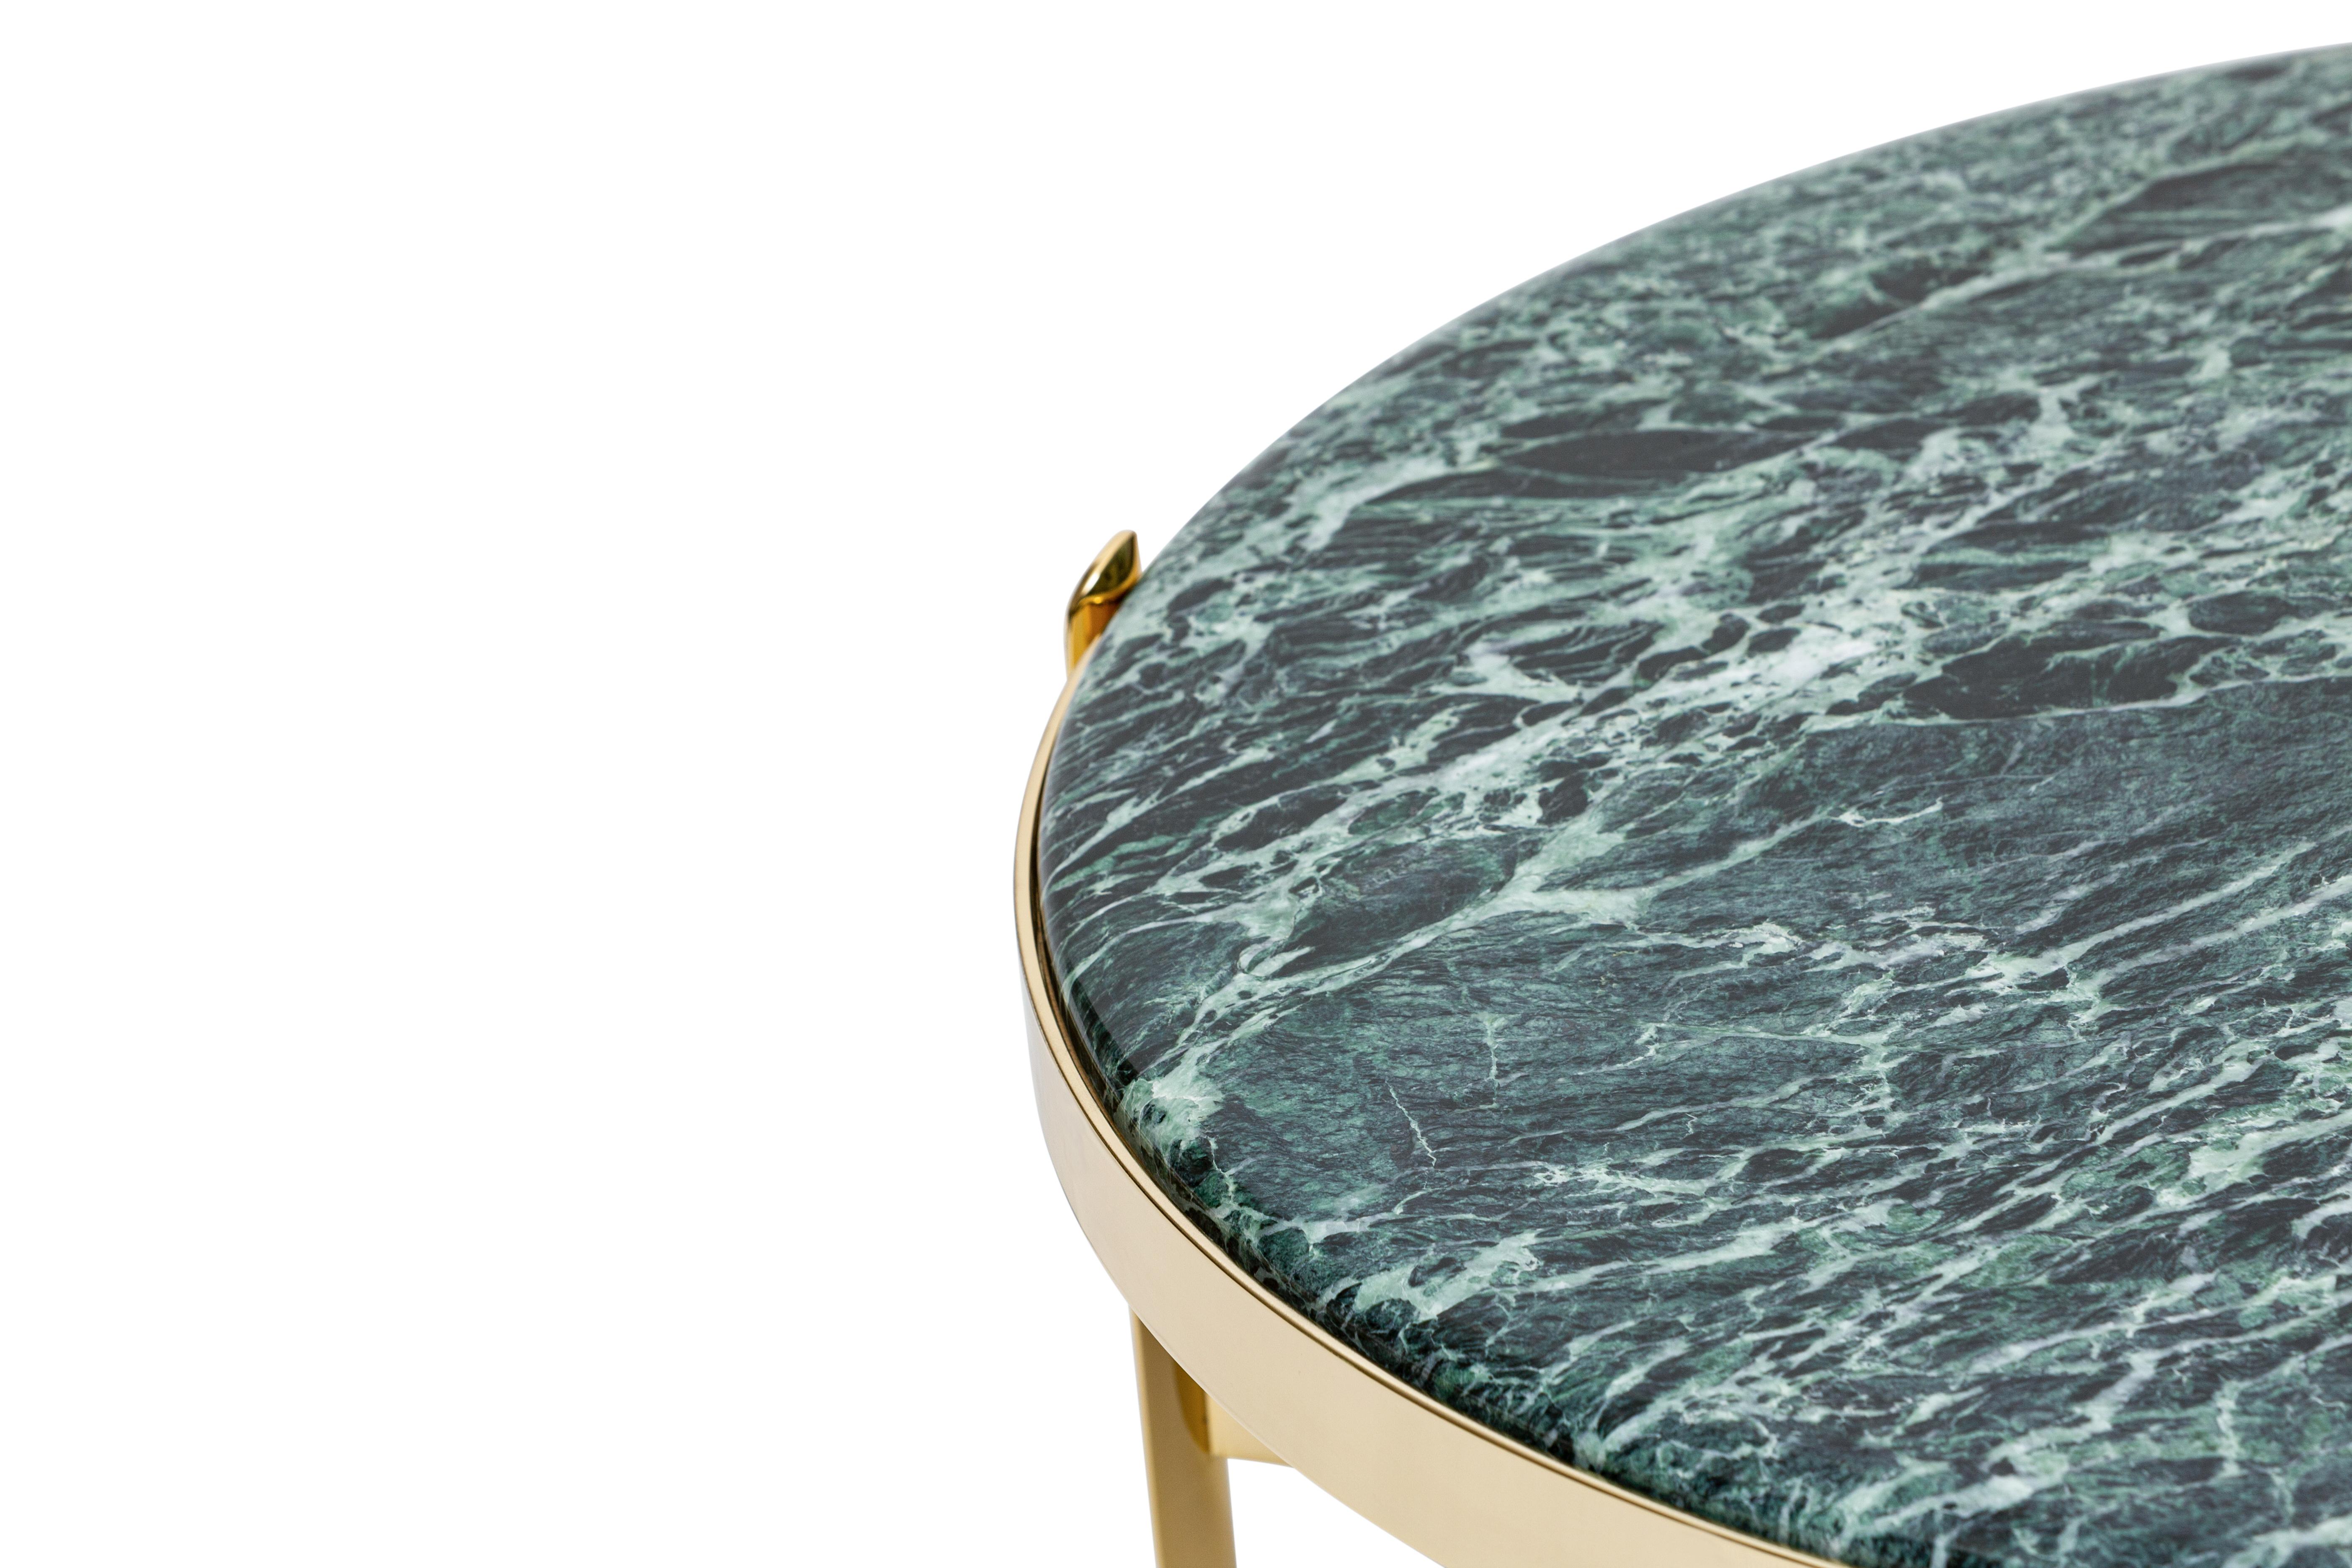 Table basse en laiton alpin du 21e siècle de style Art Déco A&S Maison Maison, Italie

Nommées d'après leur position stratégique dans les intérieurs, les tables basses et consoles Zenith ajoutent un glamour raffiné et contemporain à chaque pièce.